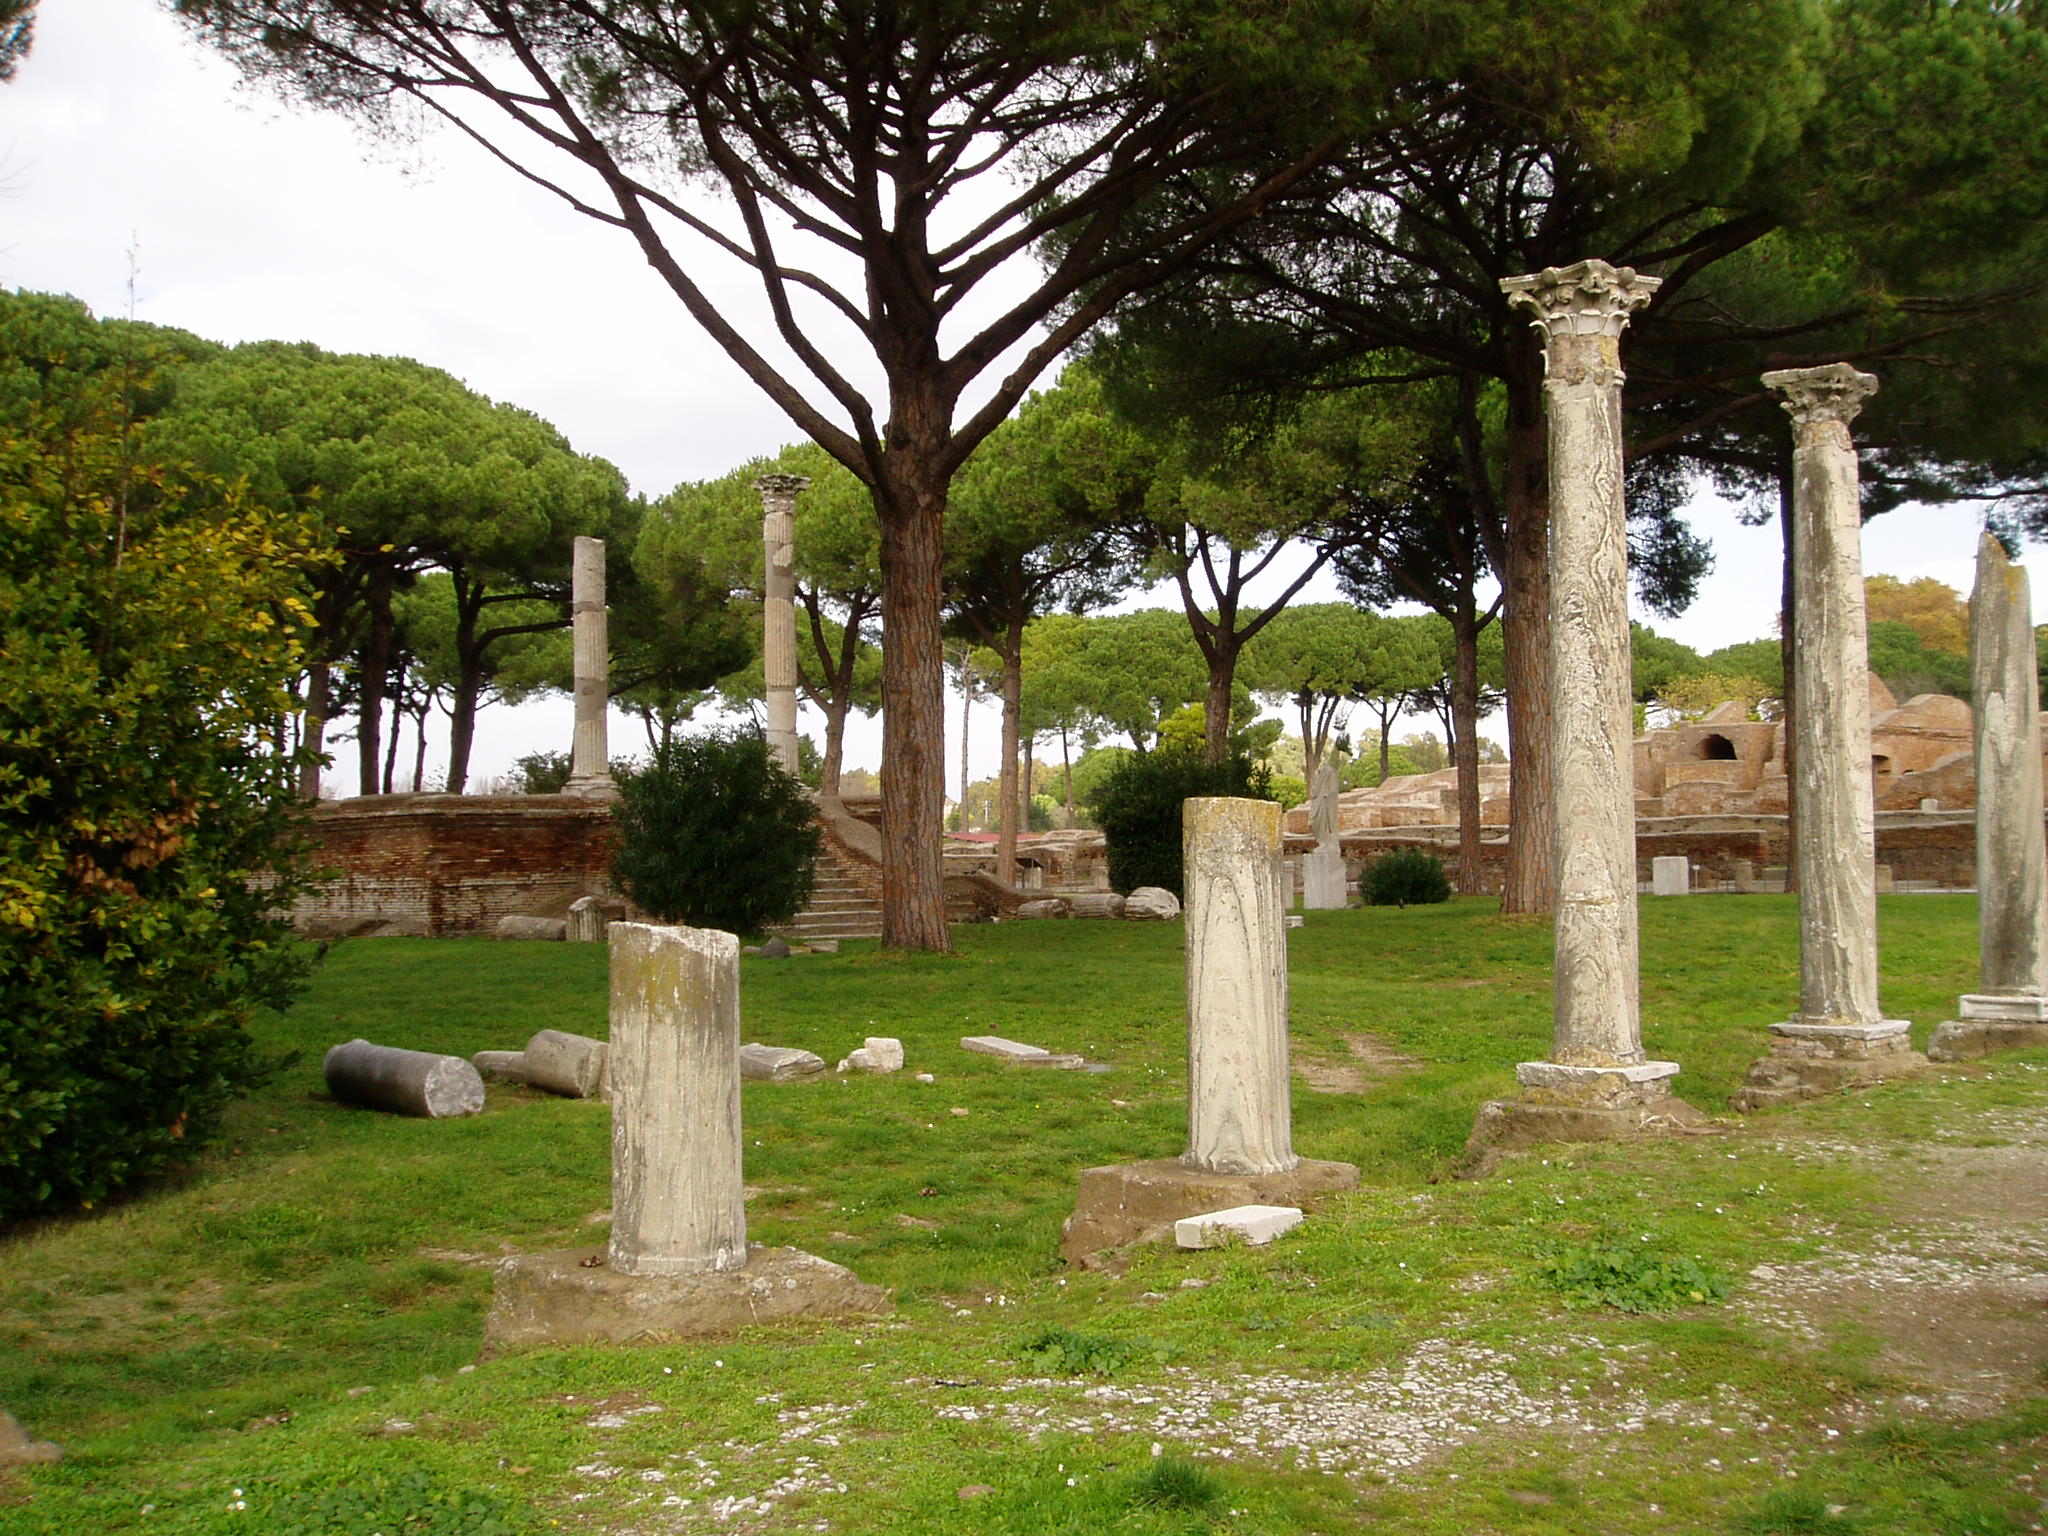 We bezochten Ostia Antica